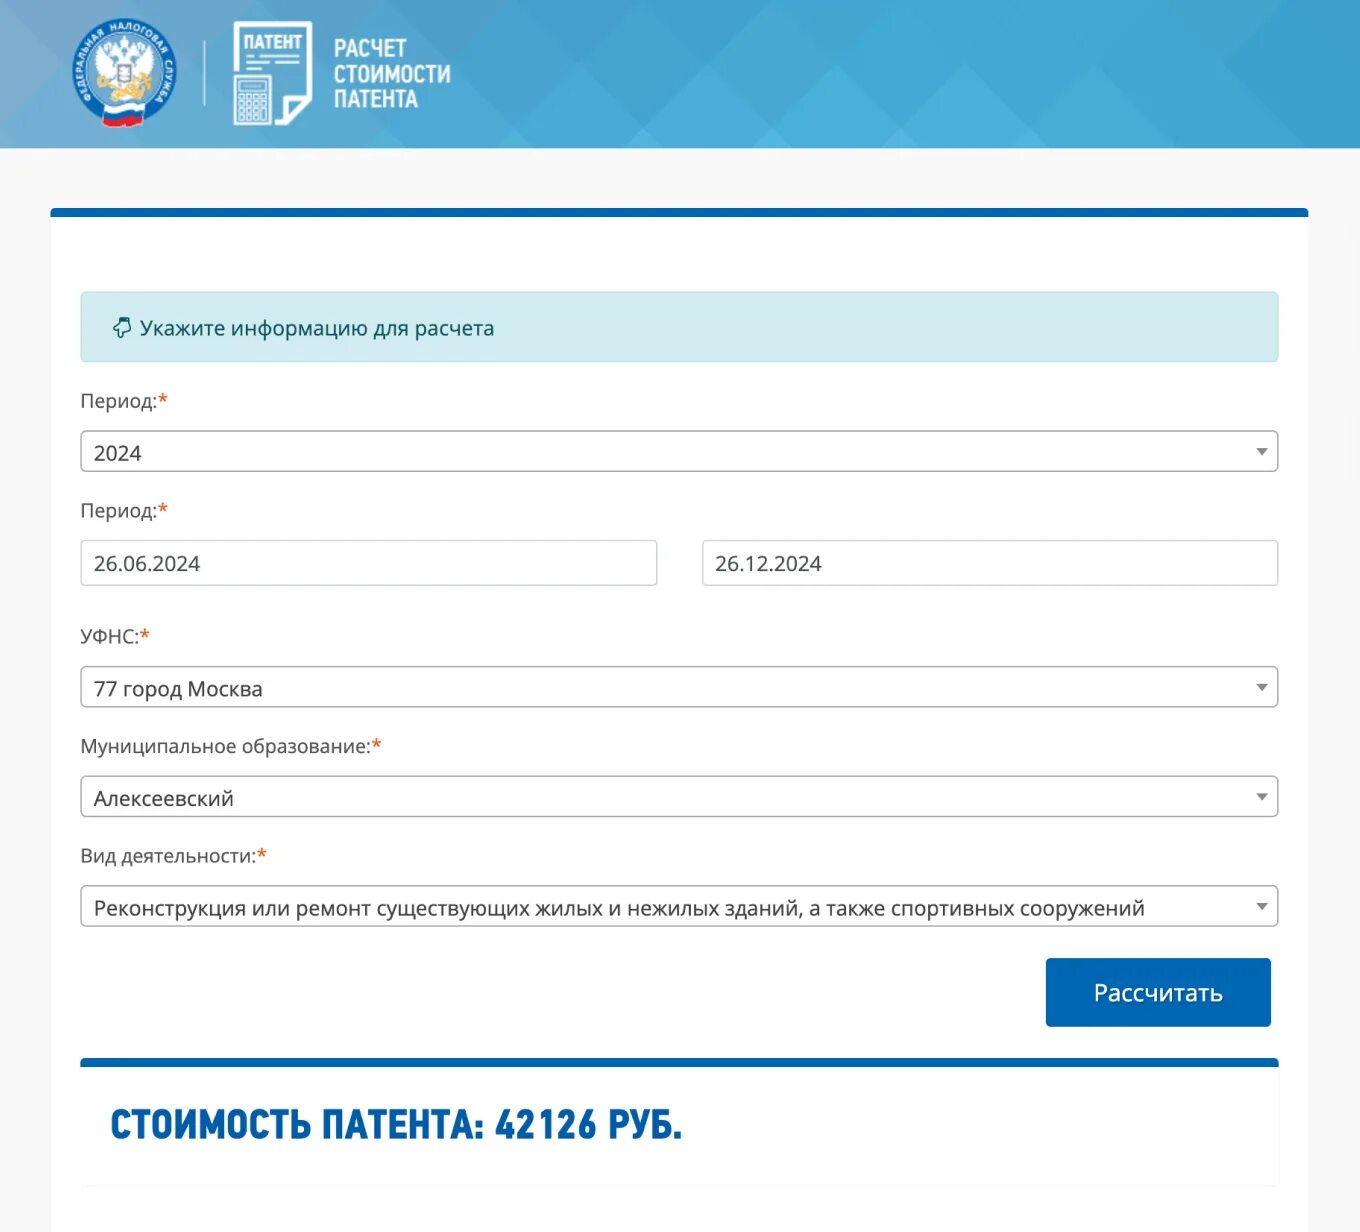 Патент в Москве 2022. Патент ИП 2023. Патент для ИП 2022. Стоимость патента в 2022 году.